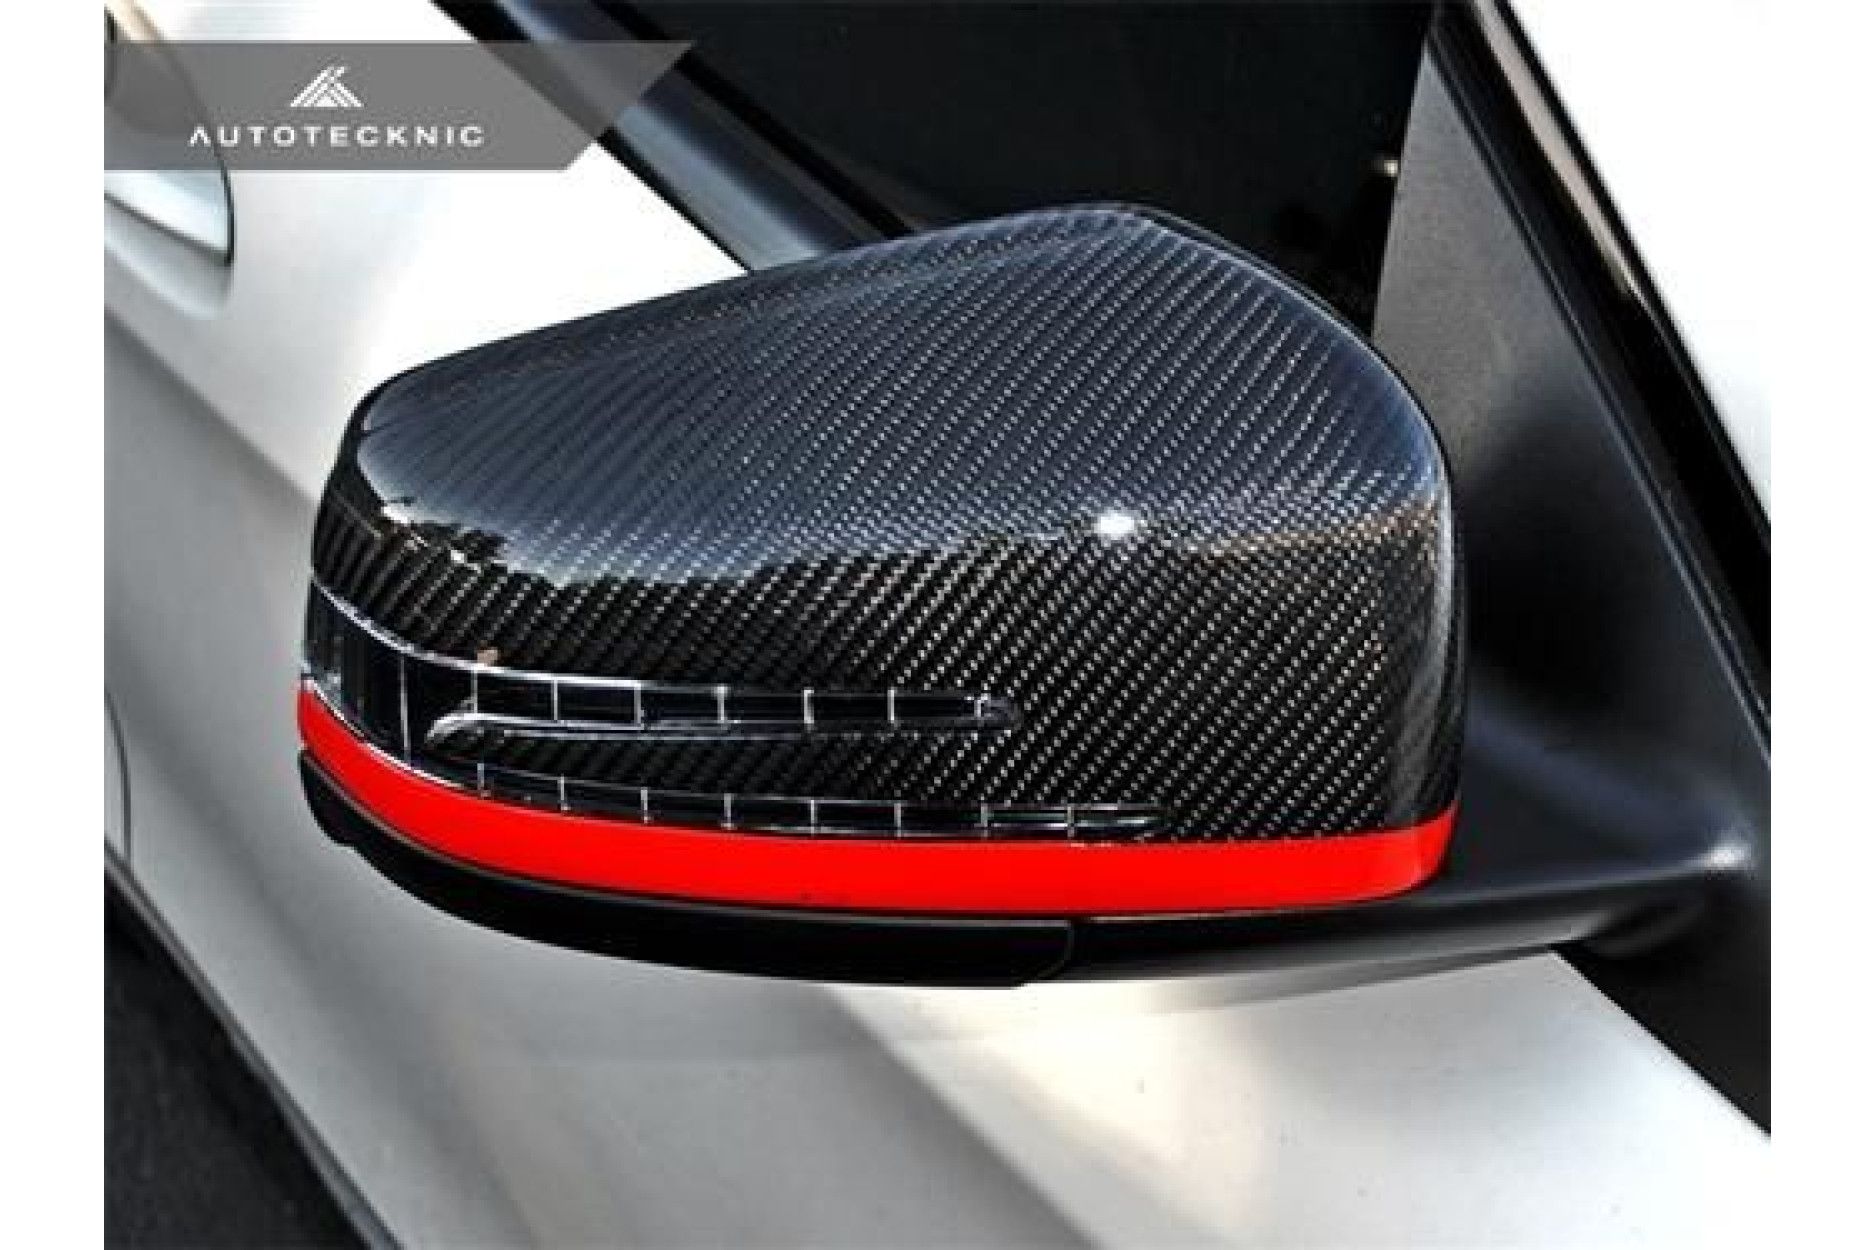 Autotecknic Ersatz-Spiegelkappen für BMW 2er, 3er, 4er F22, F30, F32